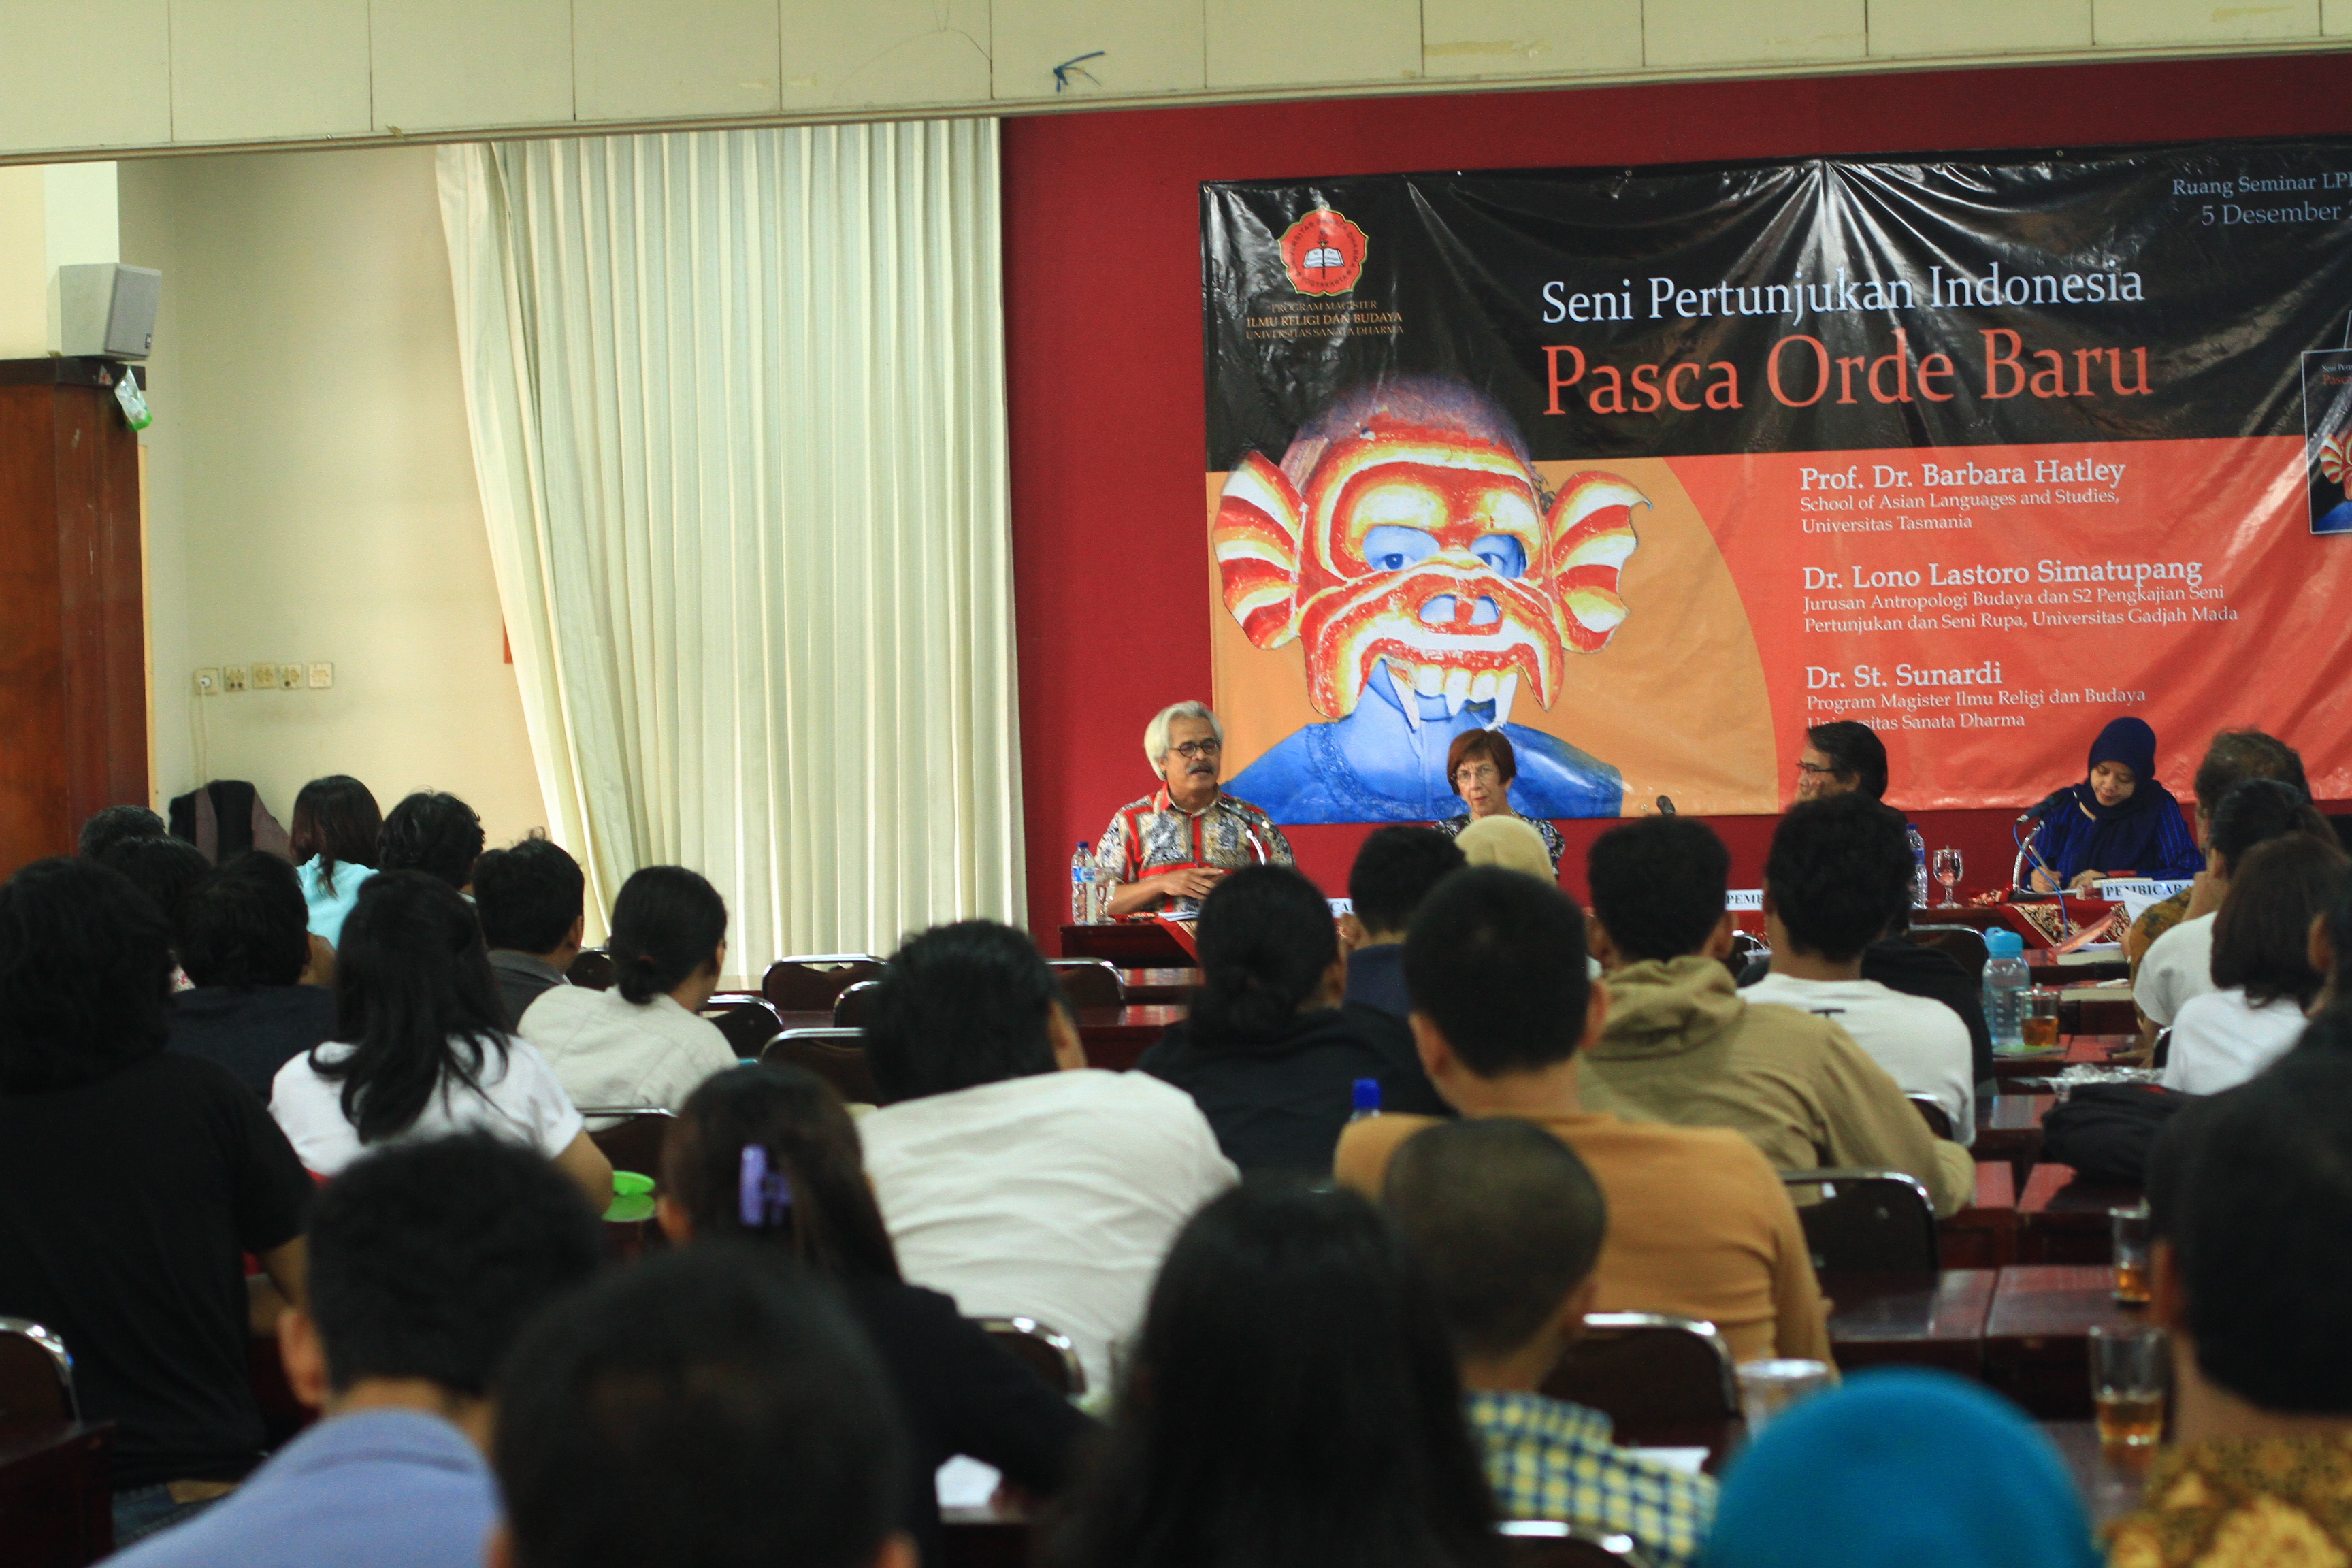 Peluncuran dan Bedah Buku �Seni Pertunjukan Indonesia Pasca Orde Baru� :: S2 Ilmu Religi dan Budaya